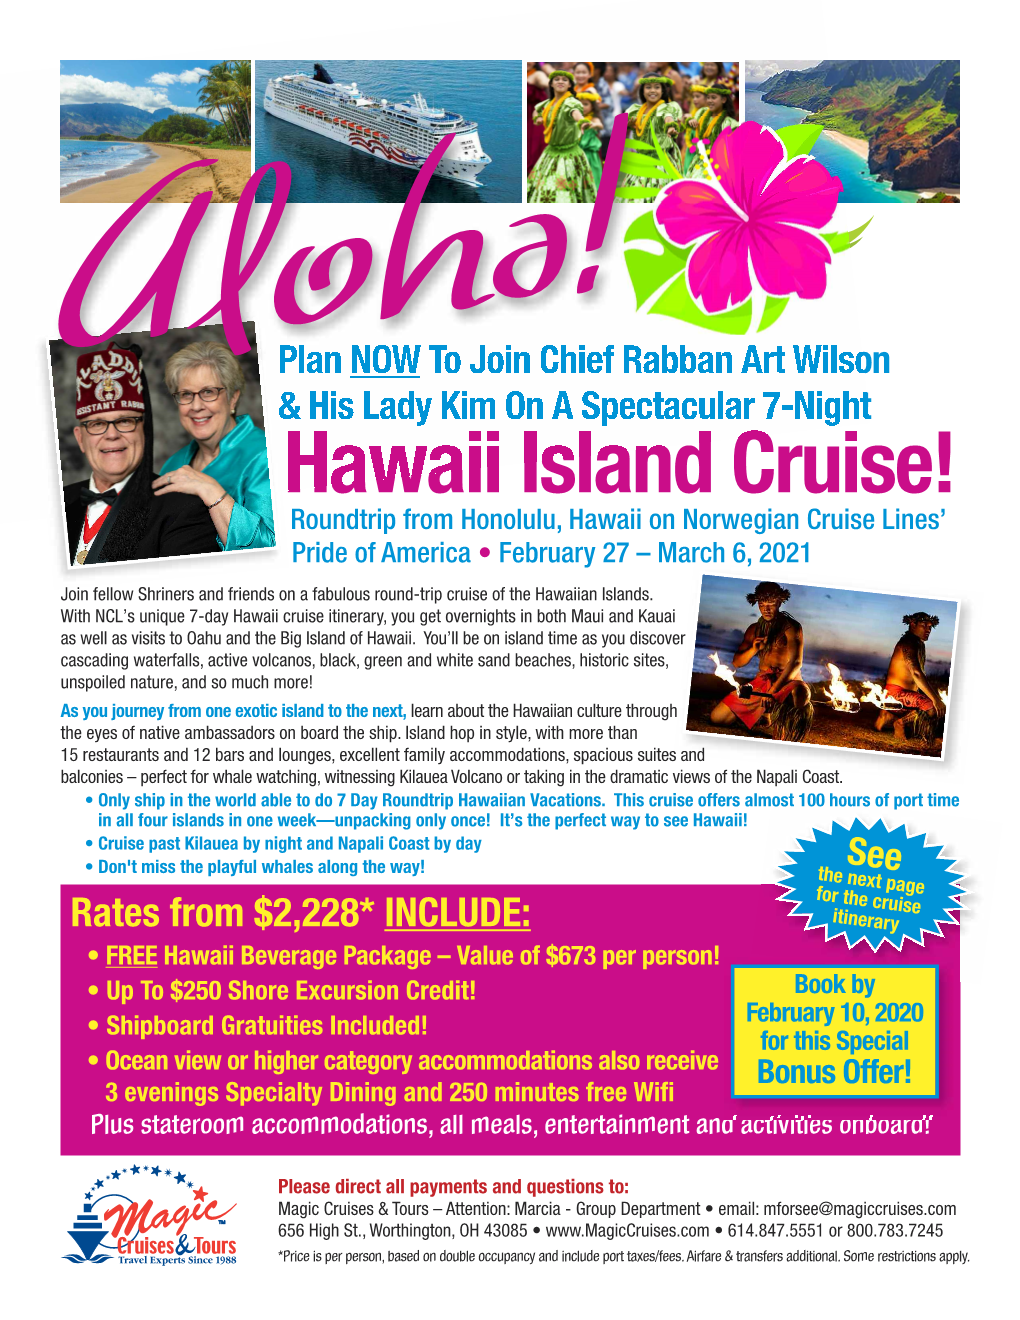 Hawaii Island Cruise!